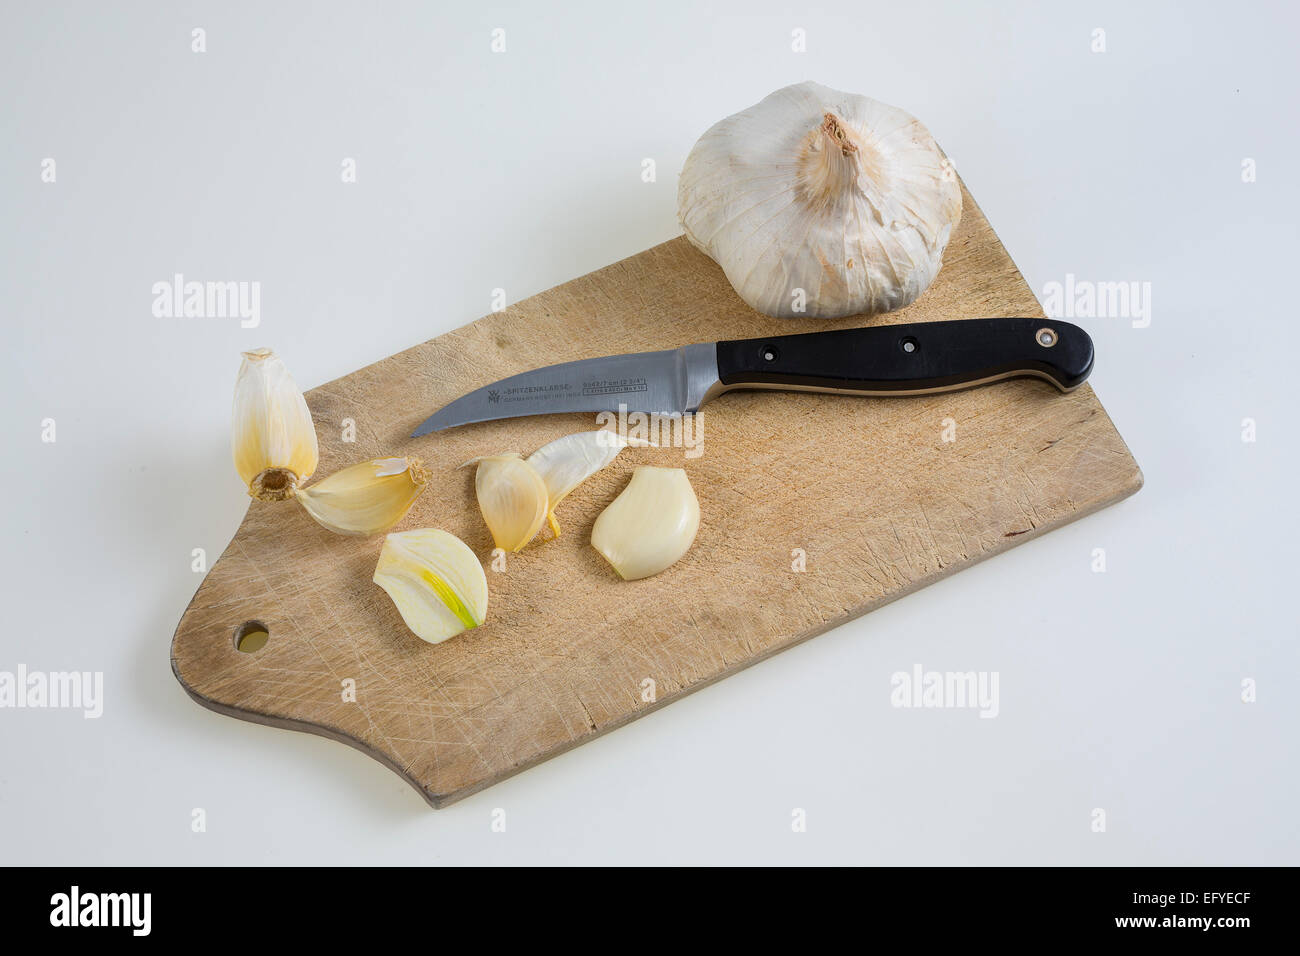 Knoblauch (Allium sativum) auf einem Küchenbrett mit Messer Foto Stock